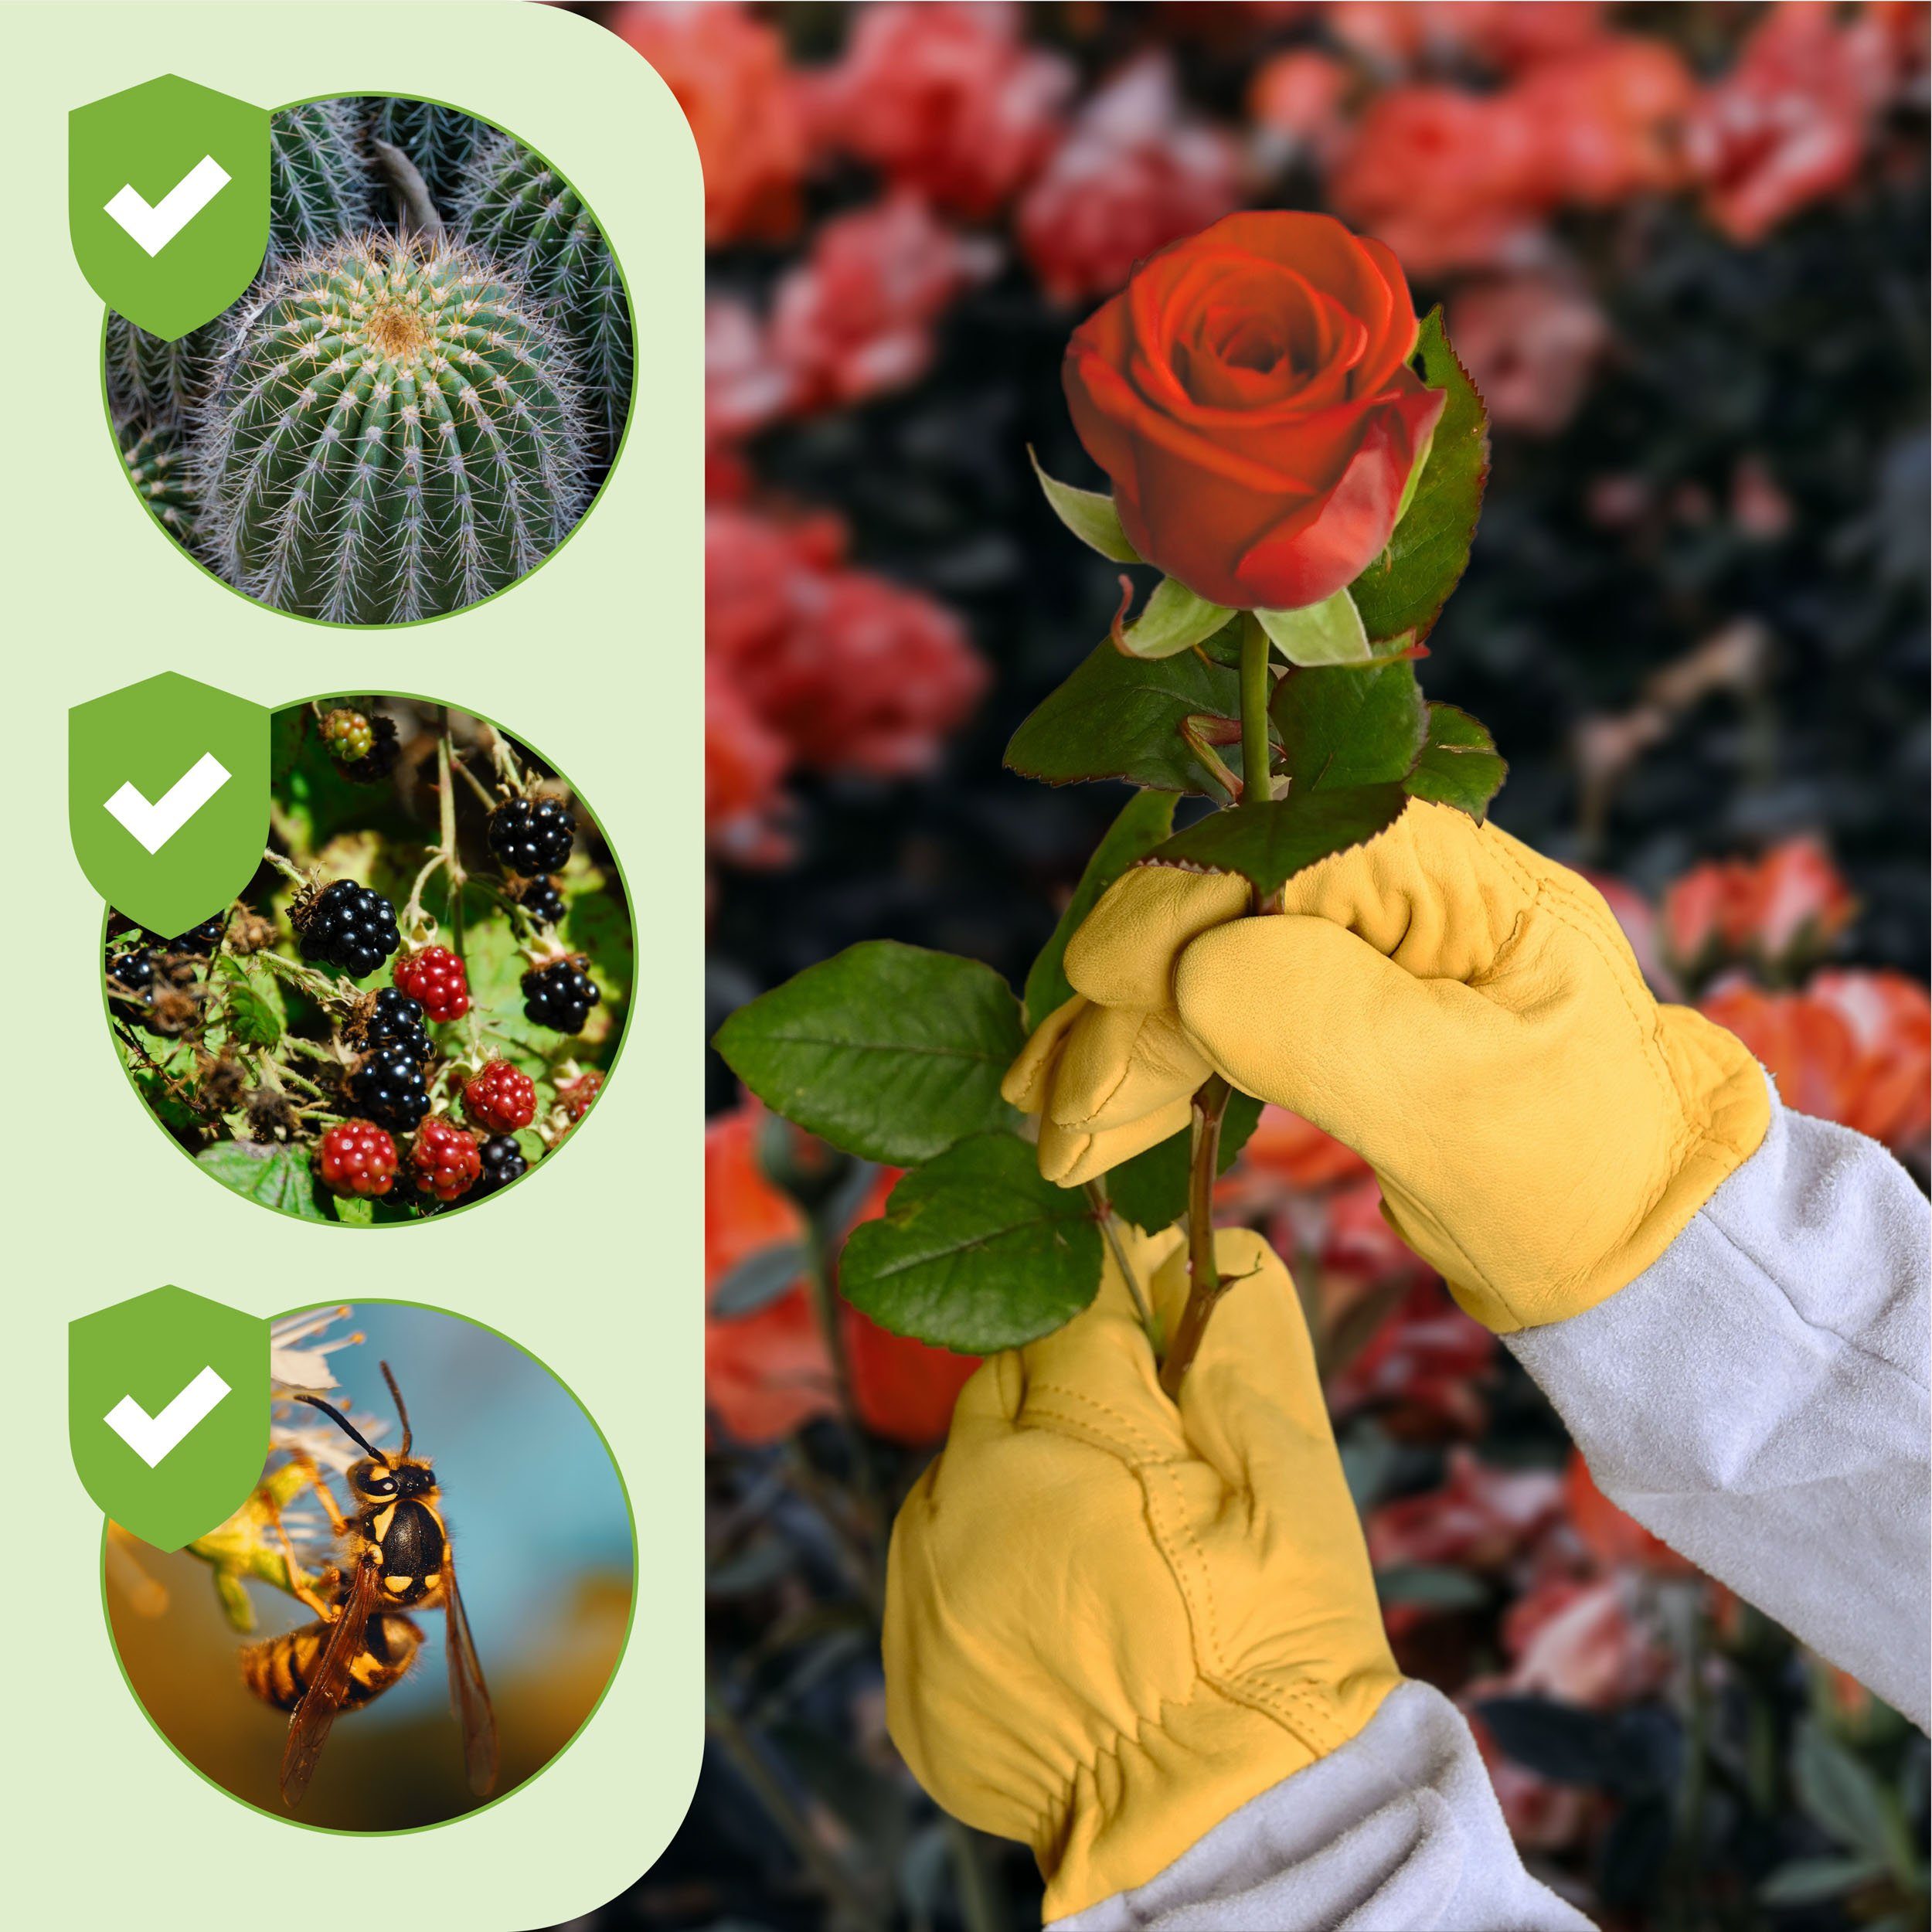 Praknu Gartenhandschuhe L Verstellbare Zertifiziert Rosenhandschuhe - 388 (Packung) Praknu Manschetten Leder Dornenfest EN 